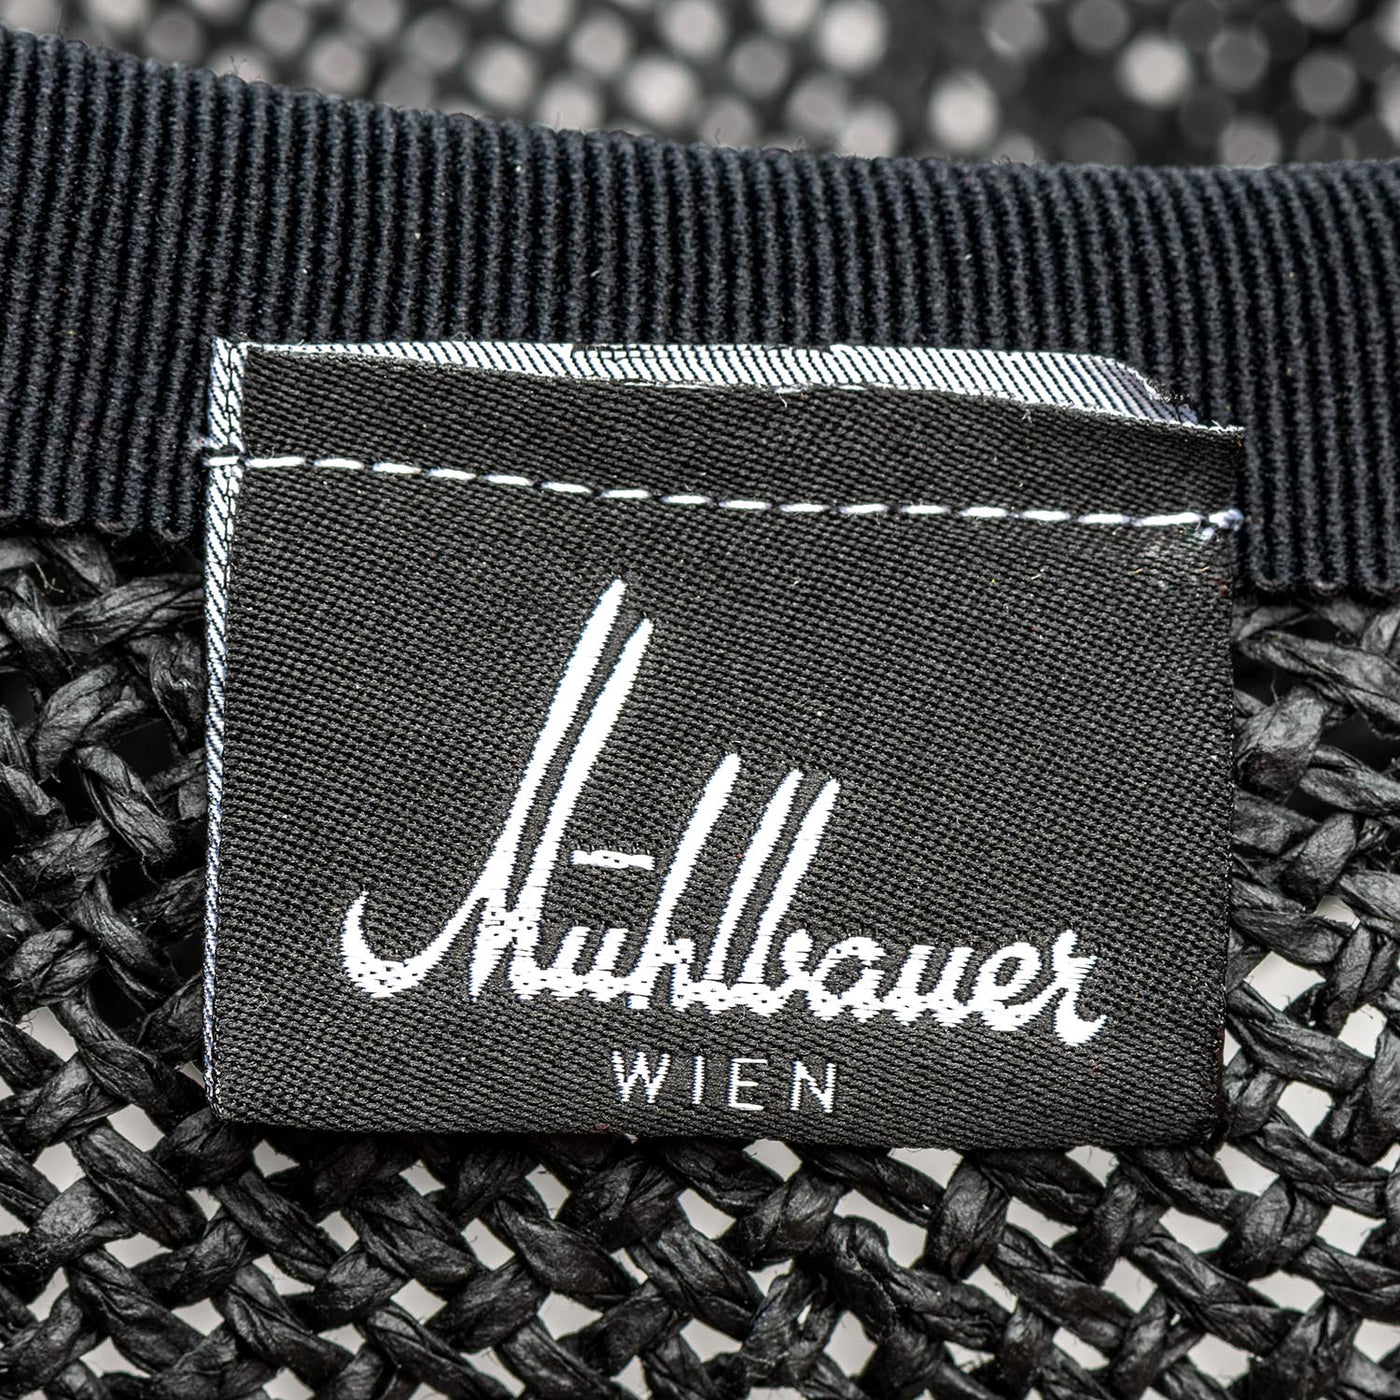 Mühlbauer logo inside hat 